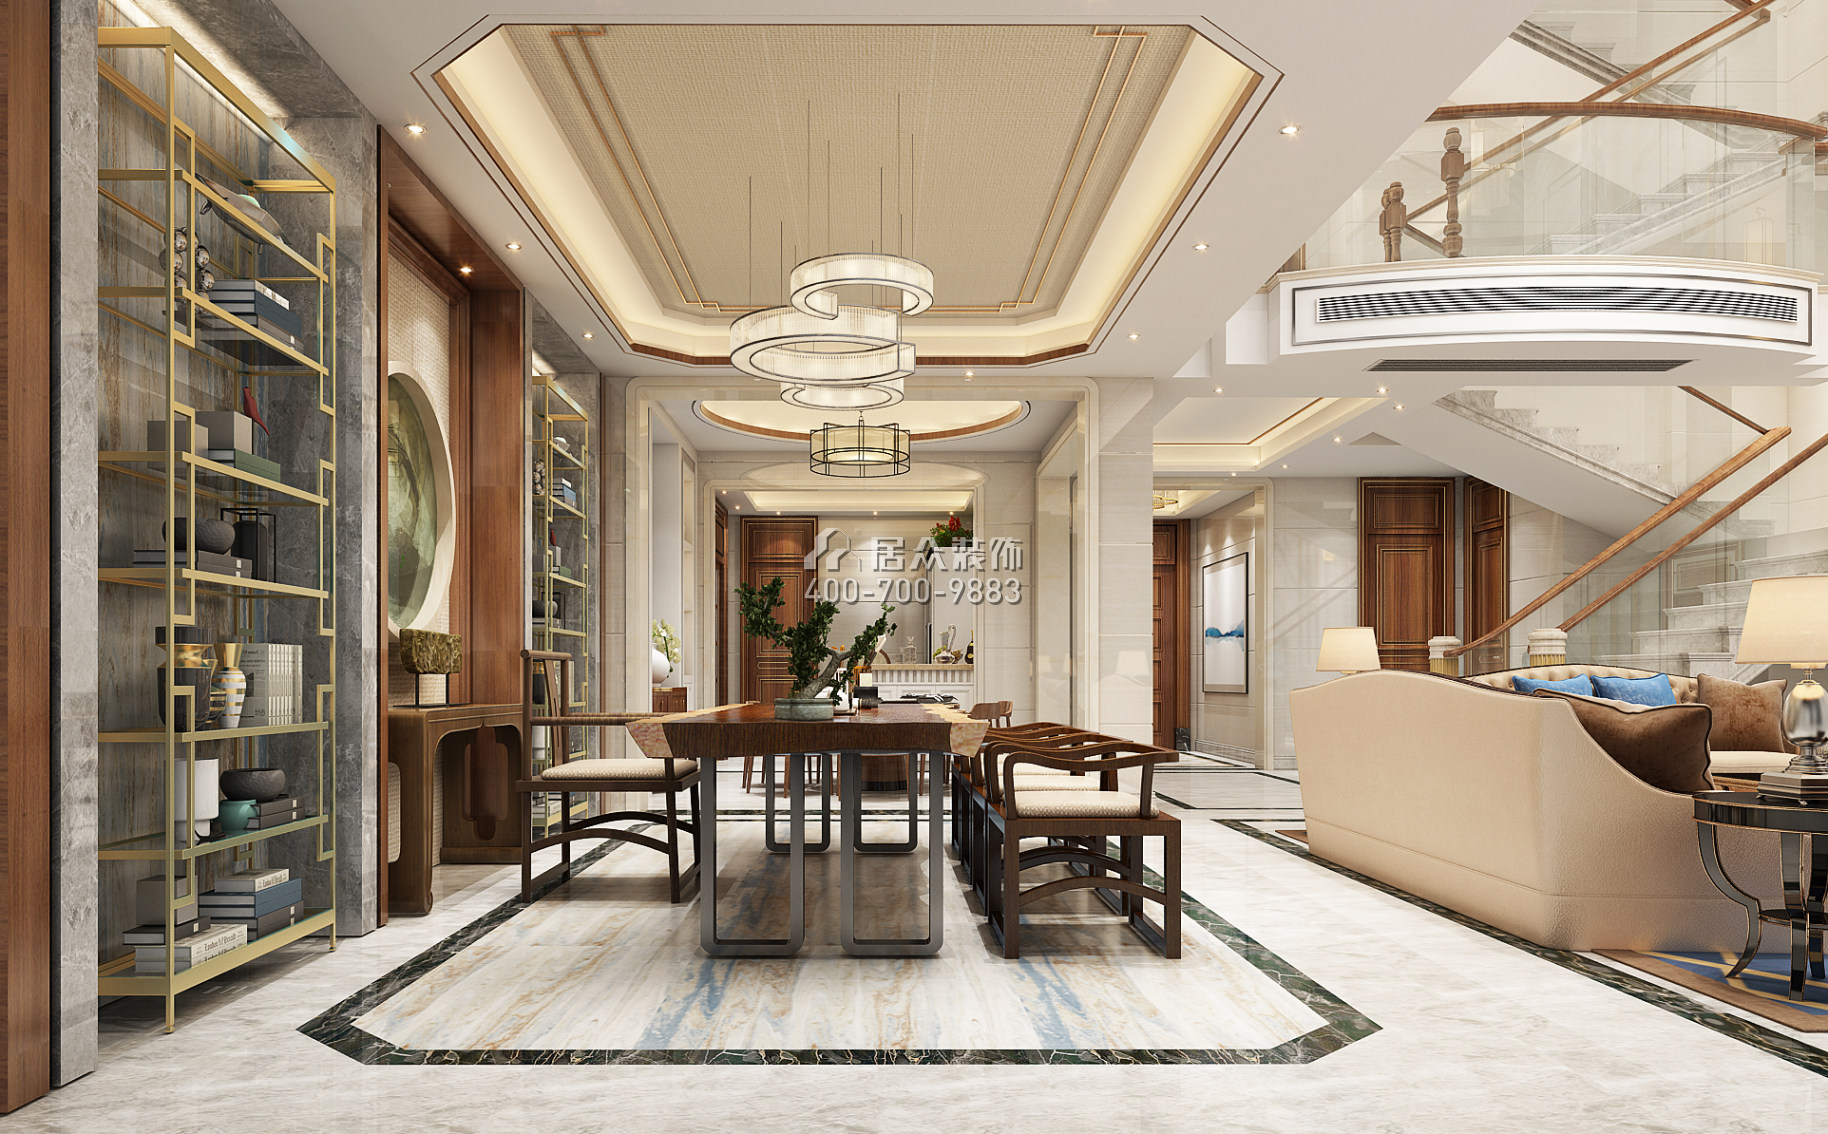 海逸豪庭御峰321平方米中式风格别墅户型茶室装修效果图